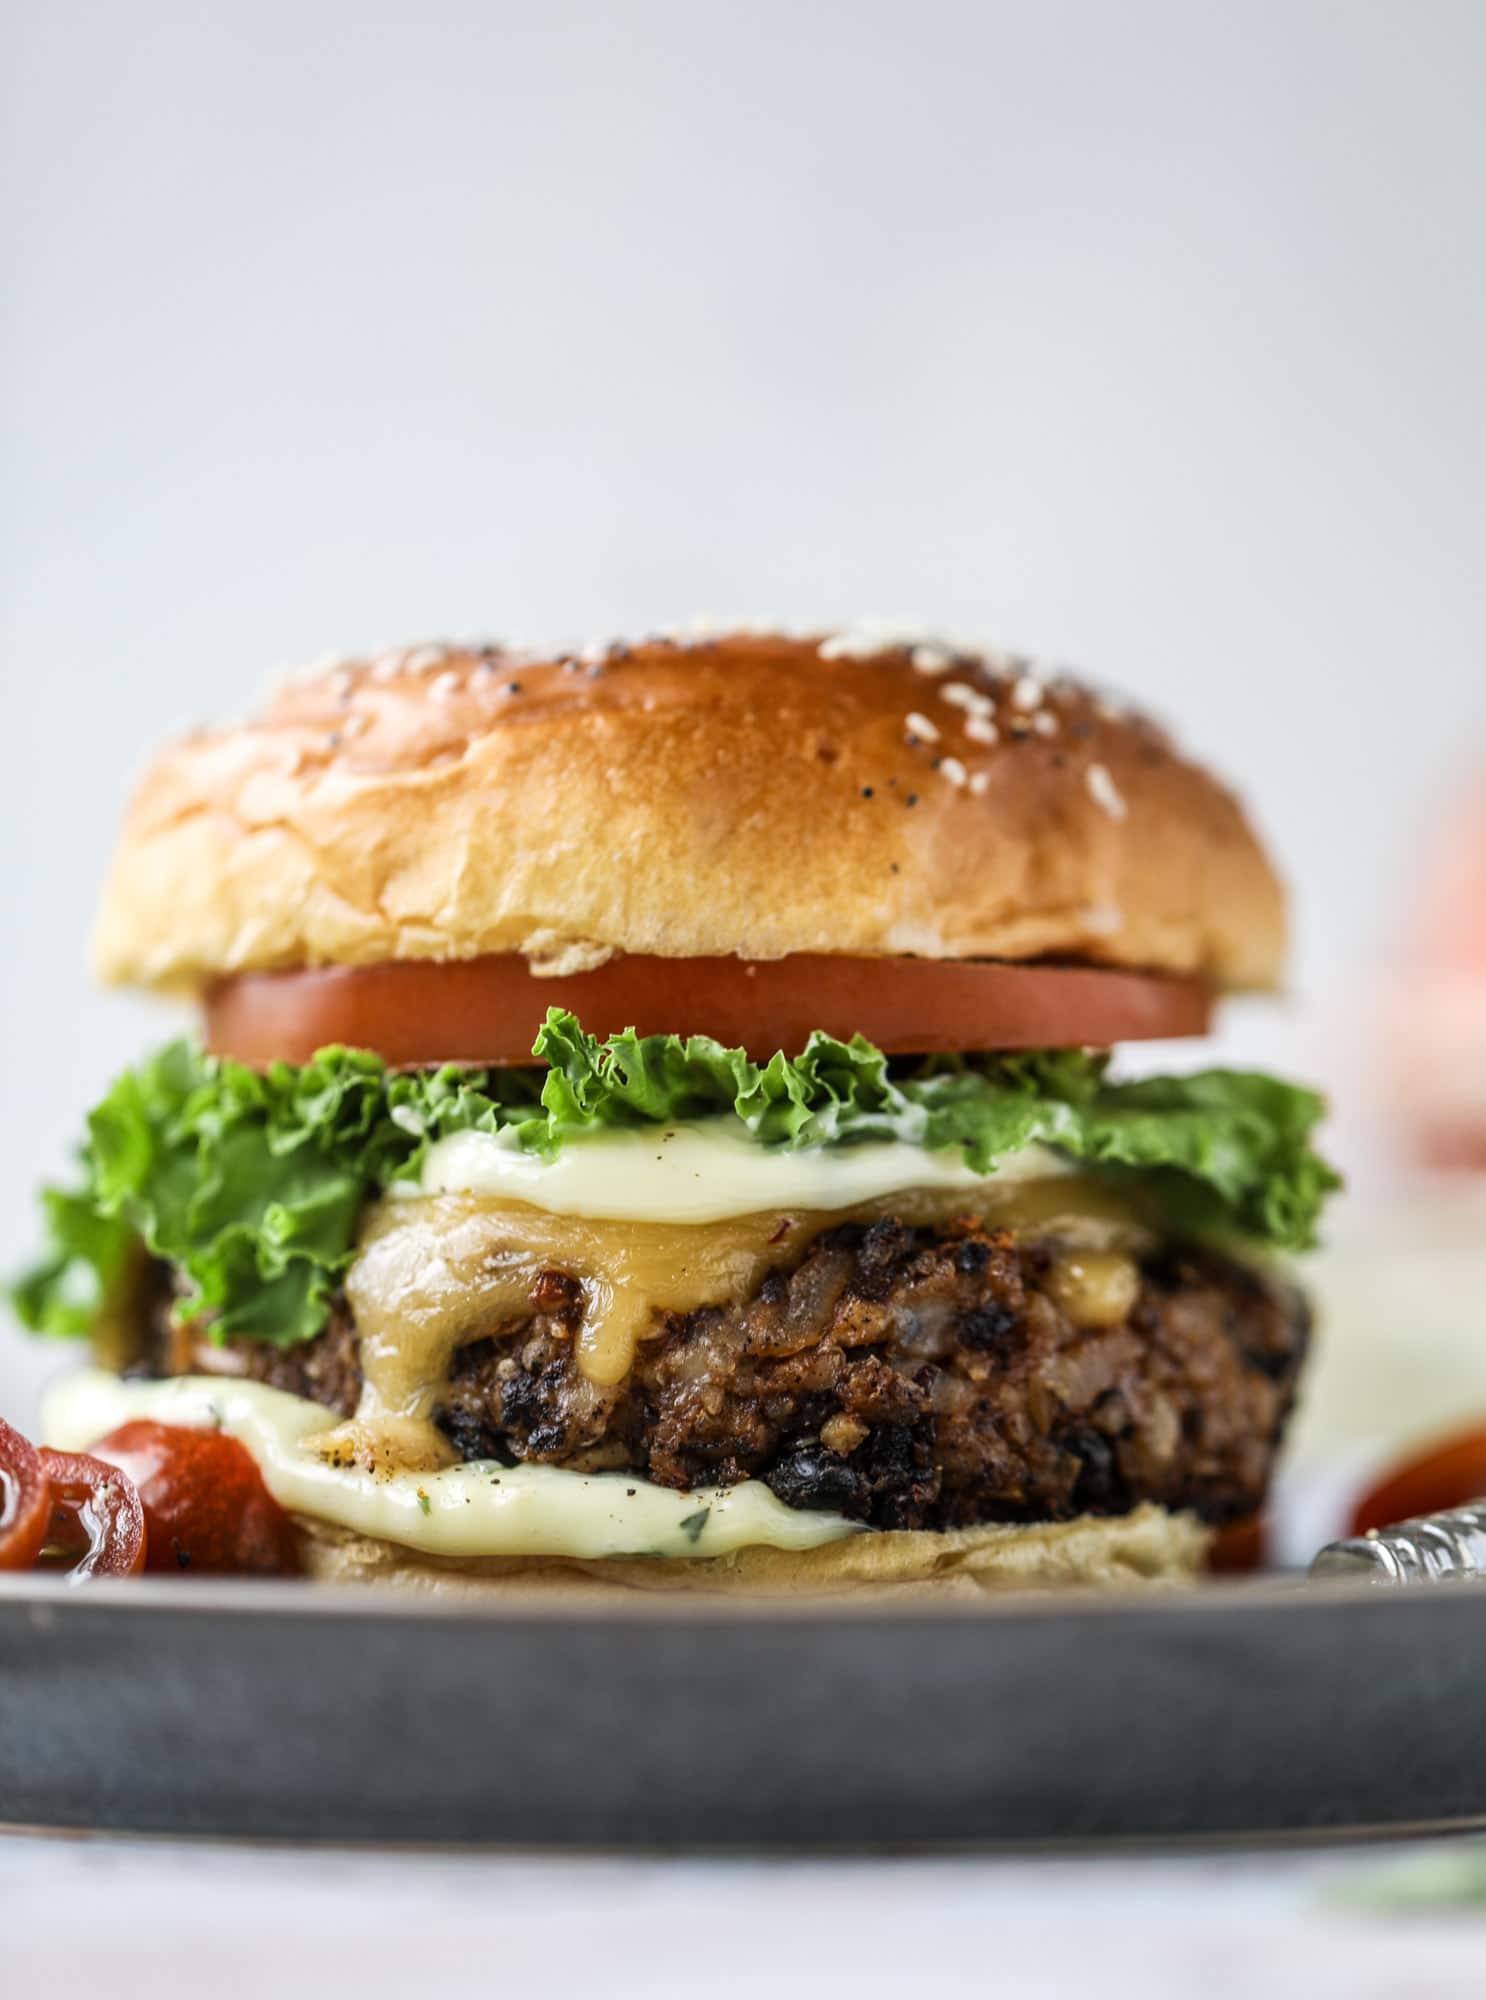 Best Veggie Burger - The Best Ever Veggie Burger with Garlic Herb Mayo